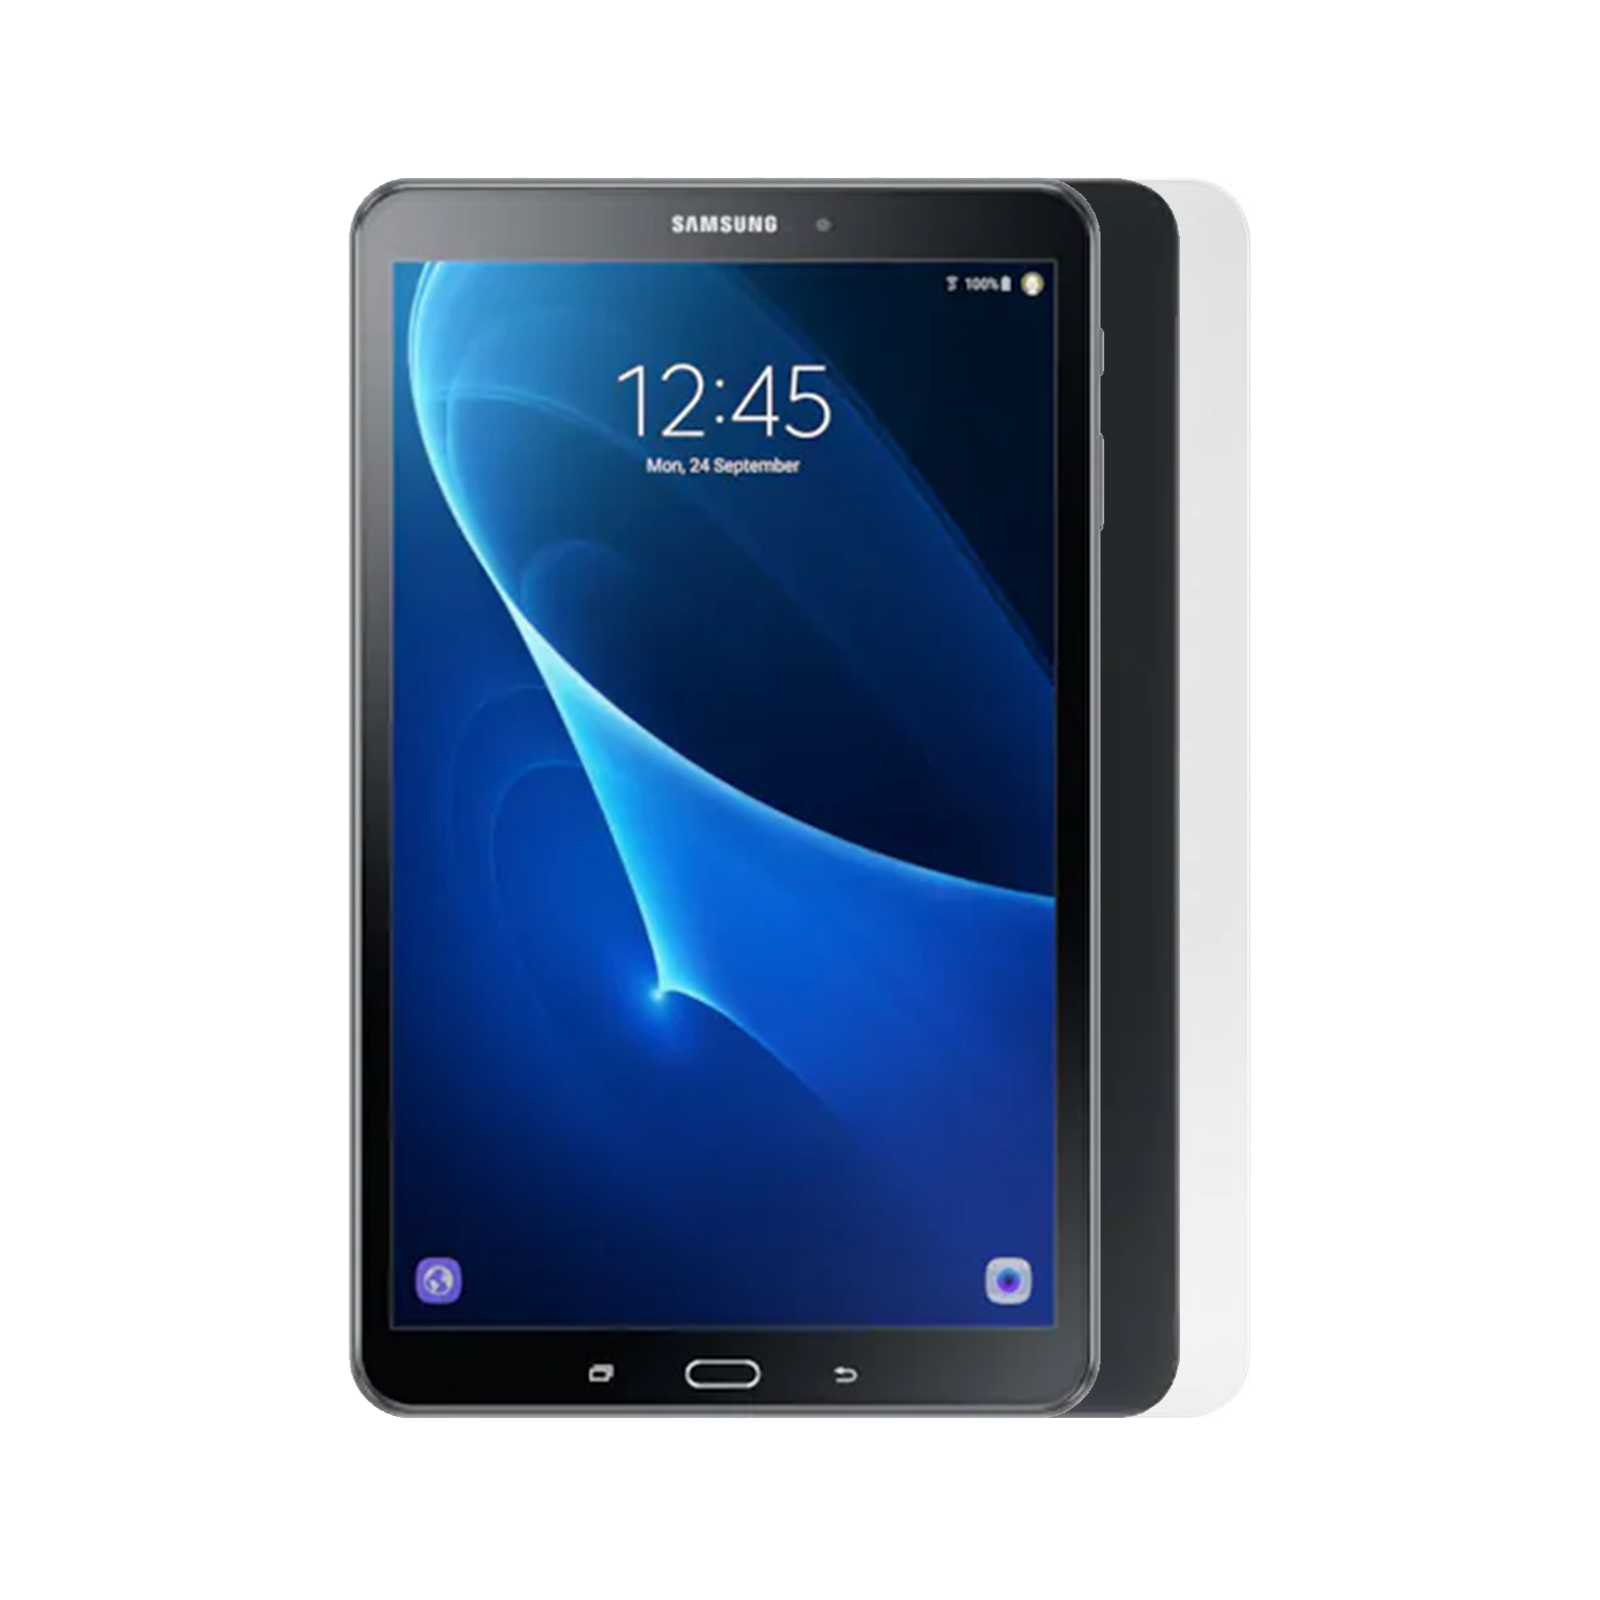 Samsung Galaxy Tab A 10.1 T580 - Good Condition